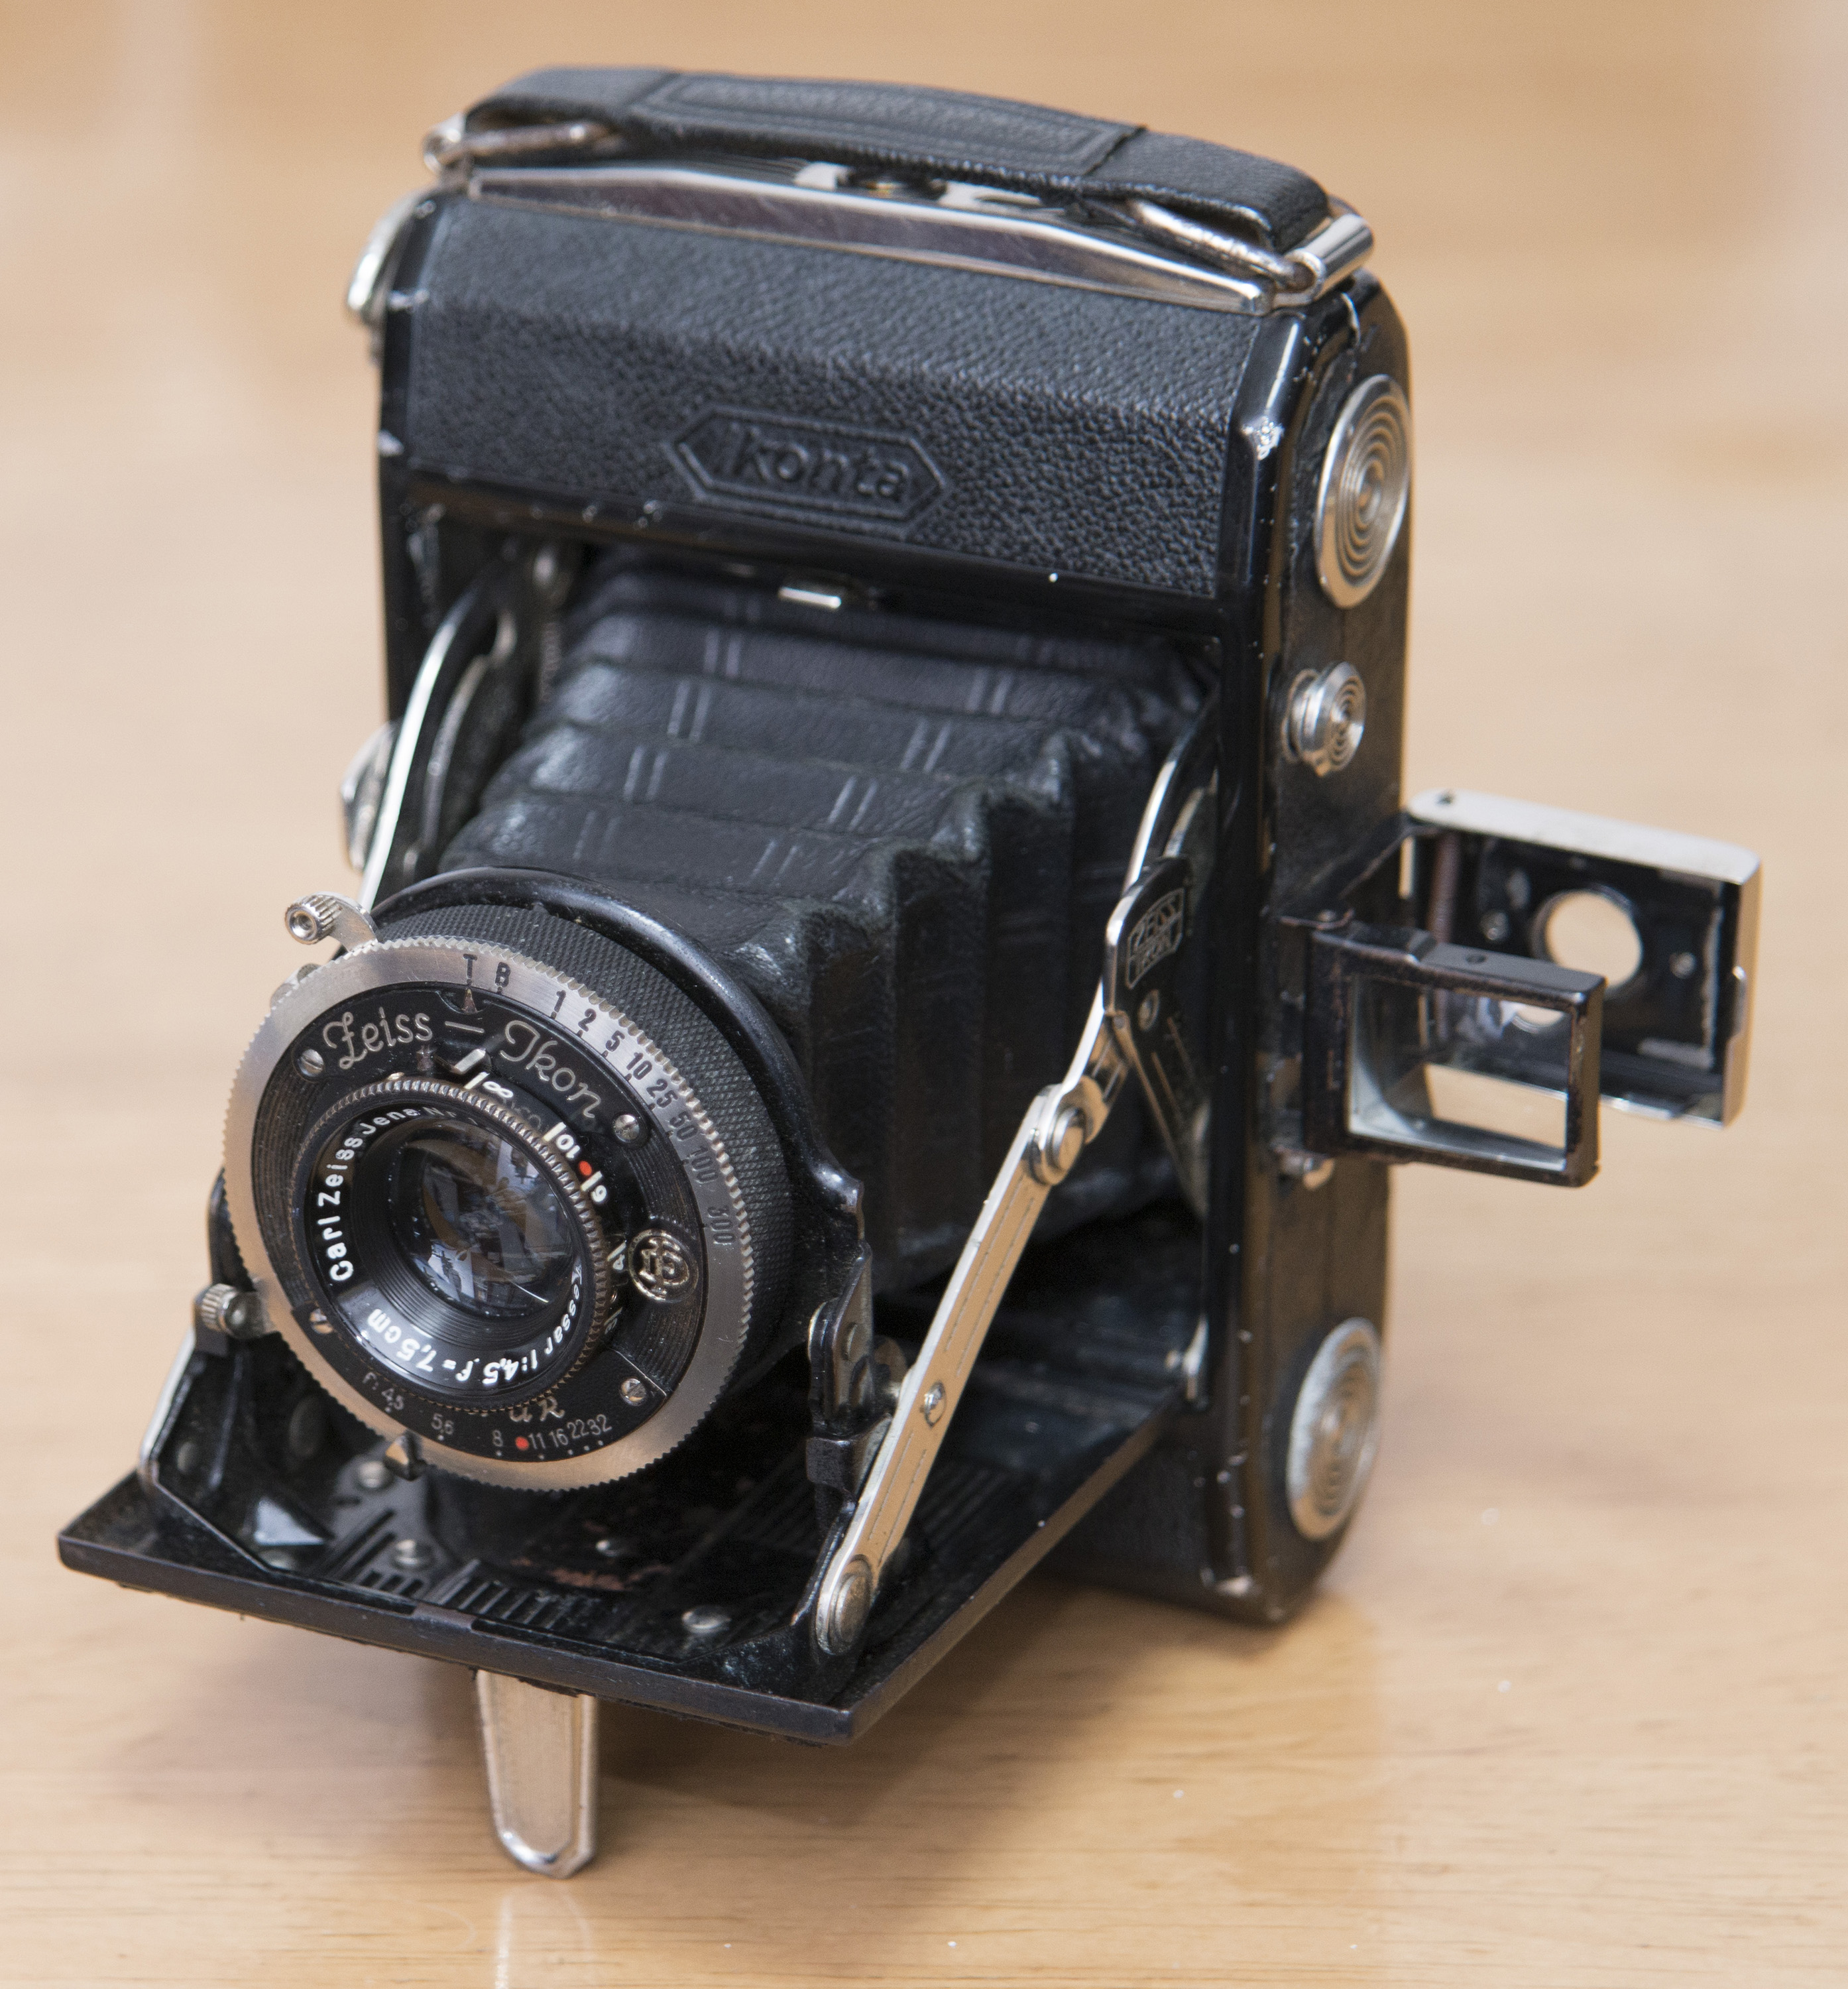 ドイツ光学工業全盛期のカメラ イコンタ